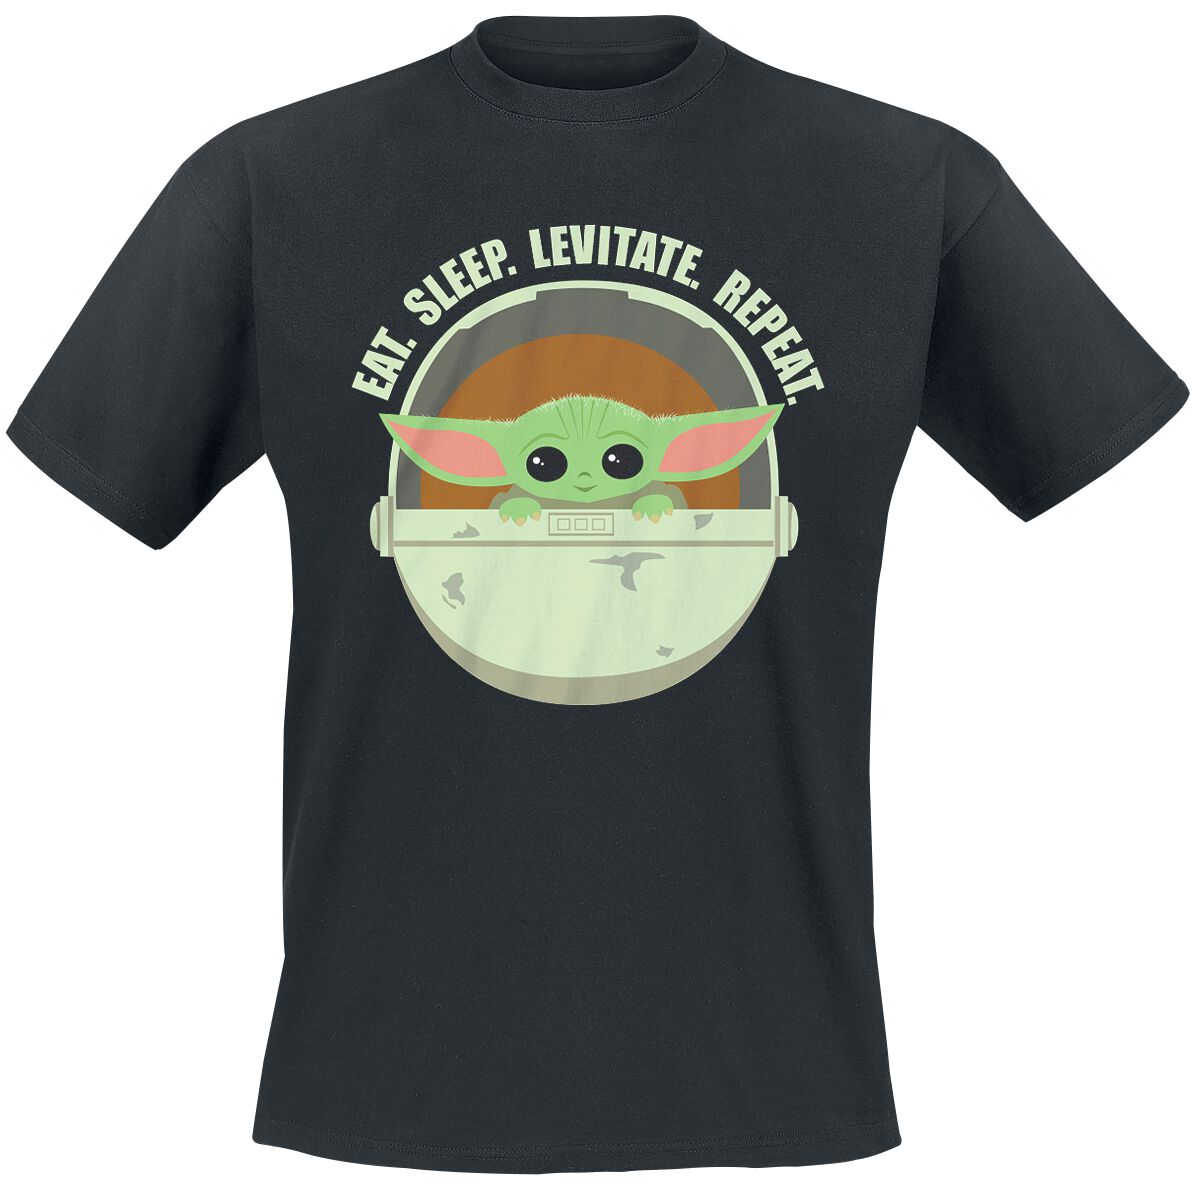 Star Wars T-Shirt - The Mandalorian - Eat. Sleep. Levitate. Repeat. - Grogu - S bis 4XL - für Männer - Größe 4XL - schwarz  - Lizenzierter Fanartikel